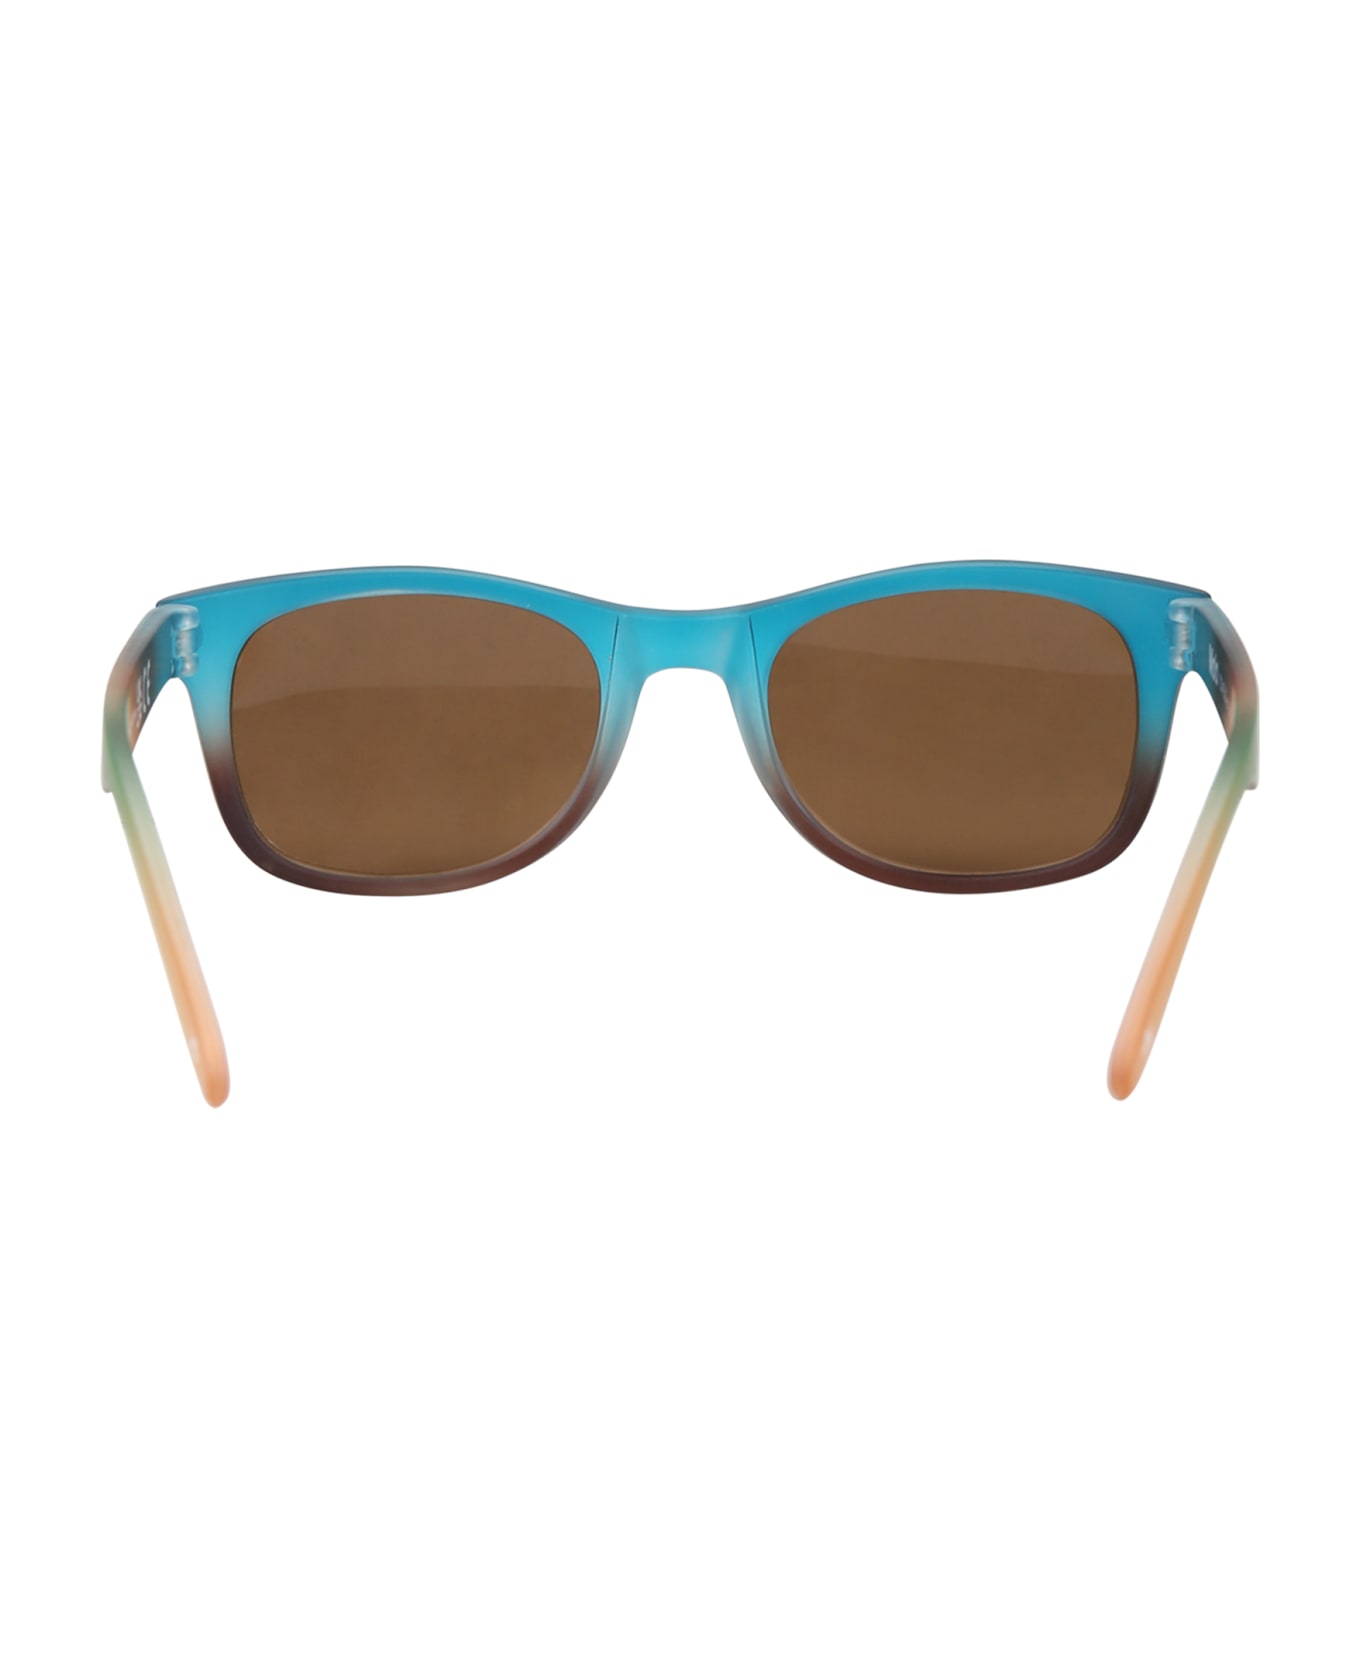 Molo Multicolor Star Sunglasses For Boy - Multicolor アクセサリー＆ギフト